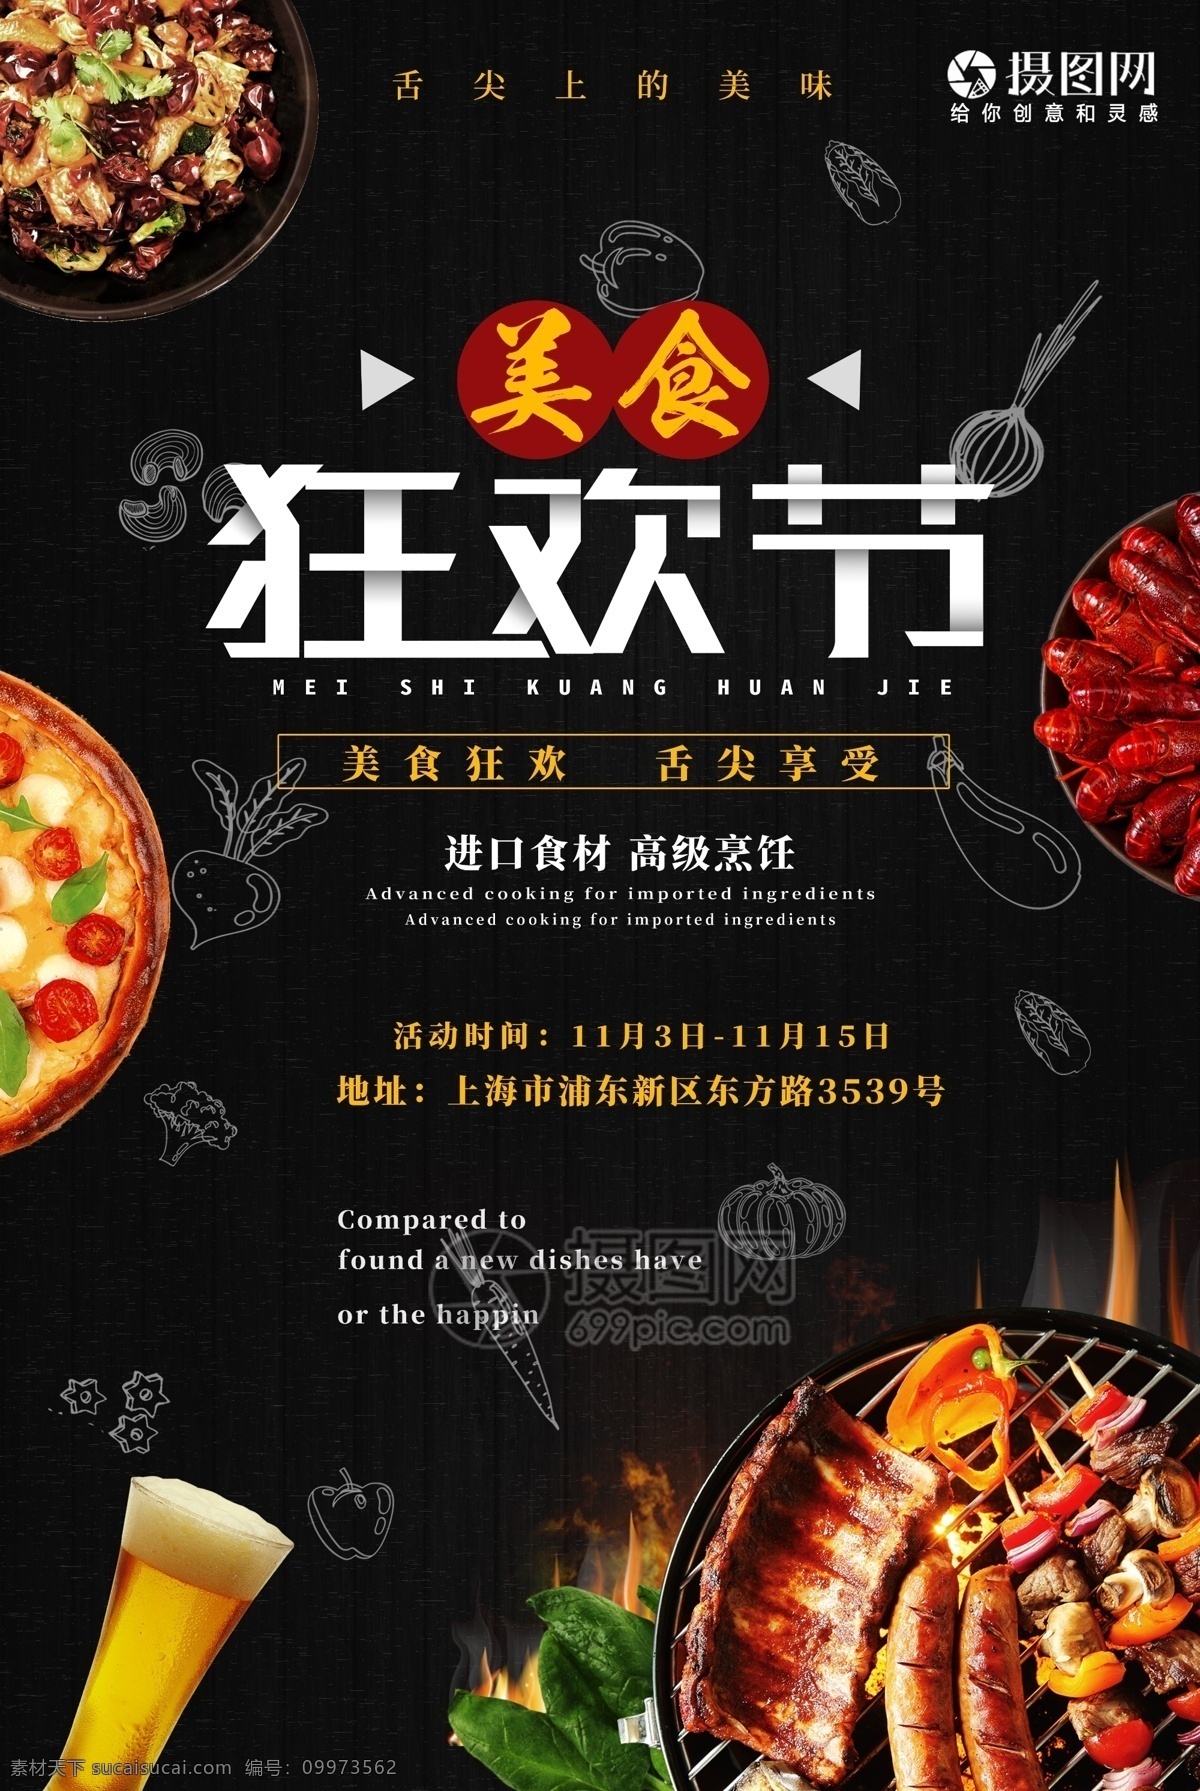 美食 狂欢节 宣传海报 食材 烹饪 美味 烧烤 披萨 海报